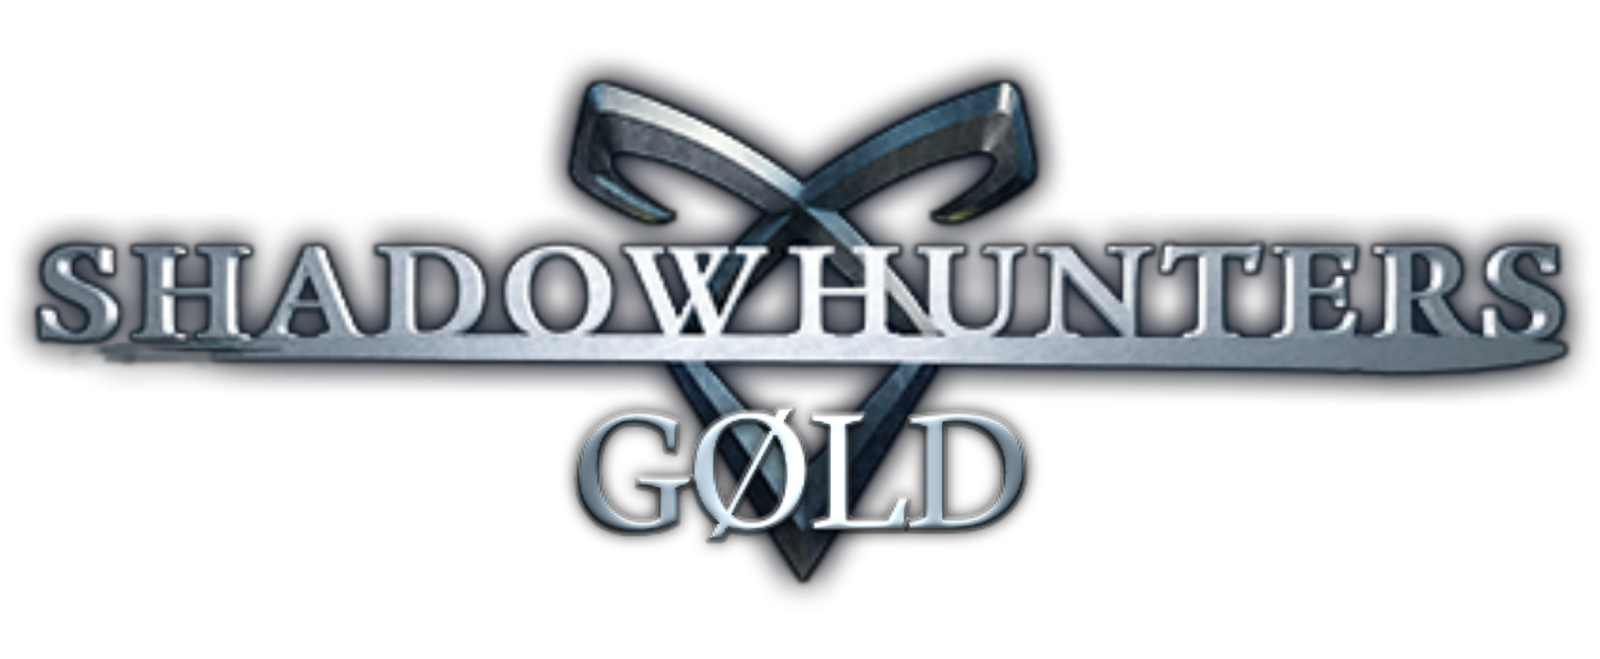 Shadowhunters Gold